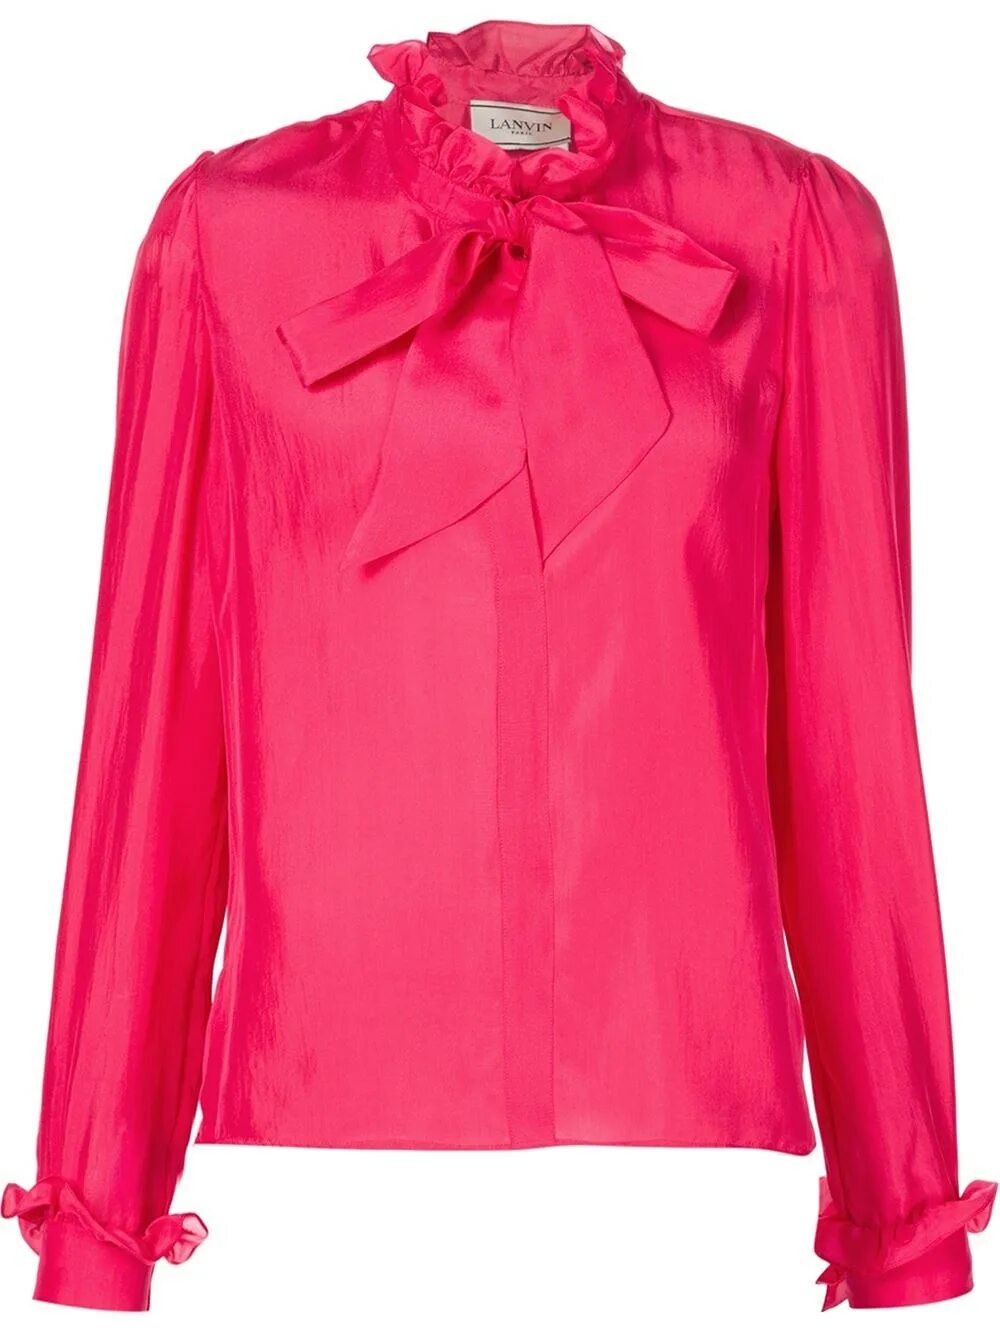 Розовая кофта с бантиками. Шёлковая блузка Ланвин. Блуза Lanvin блузка. Ярко розовая блузка. Розовая блузка женская.